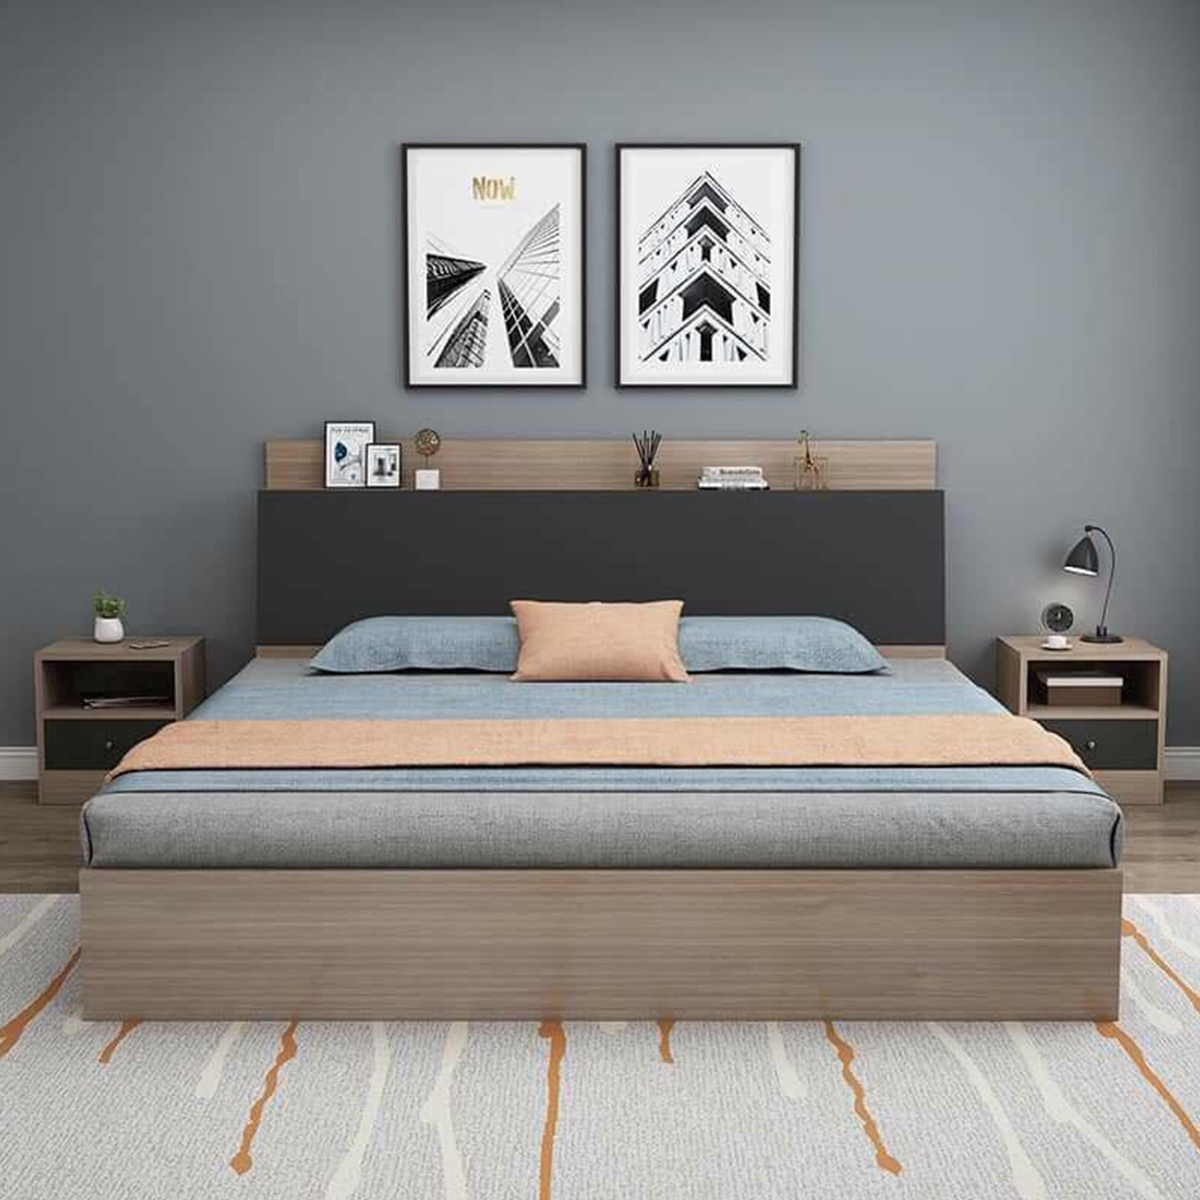 Giường gỗ MDF 1m8 với thiết kế đơn giản